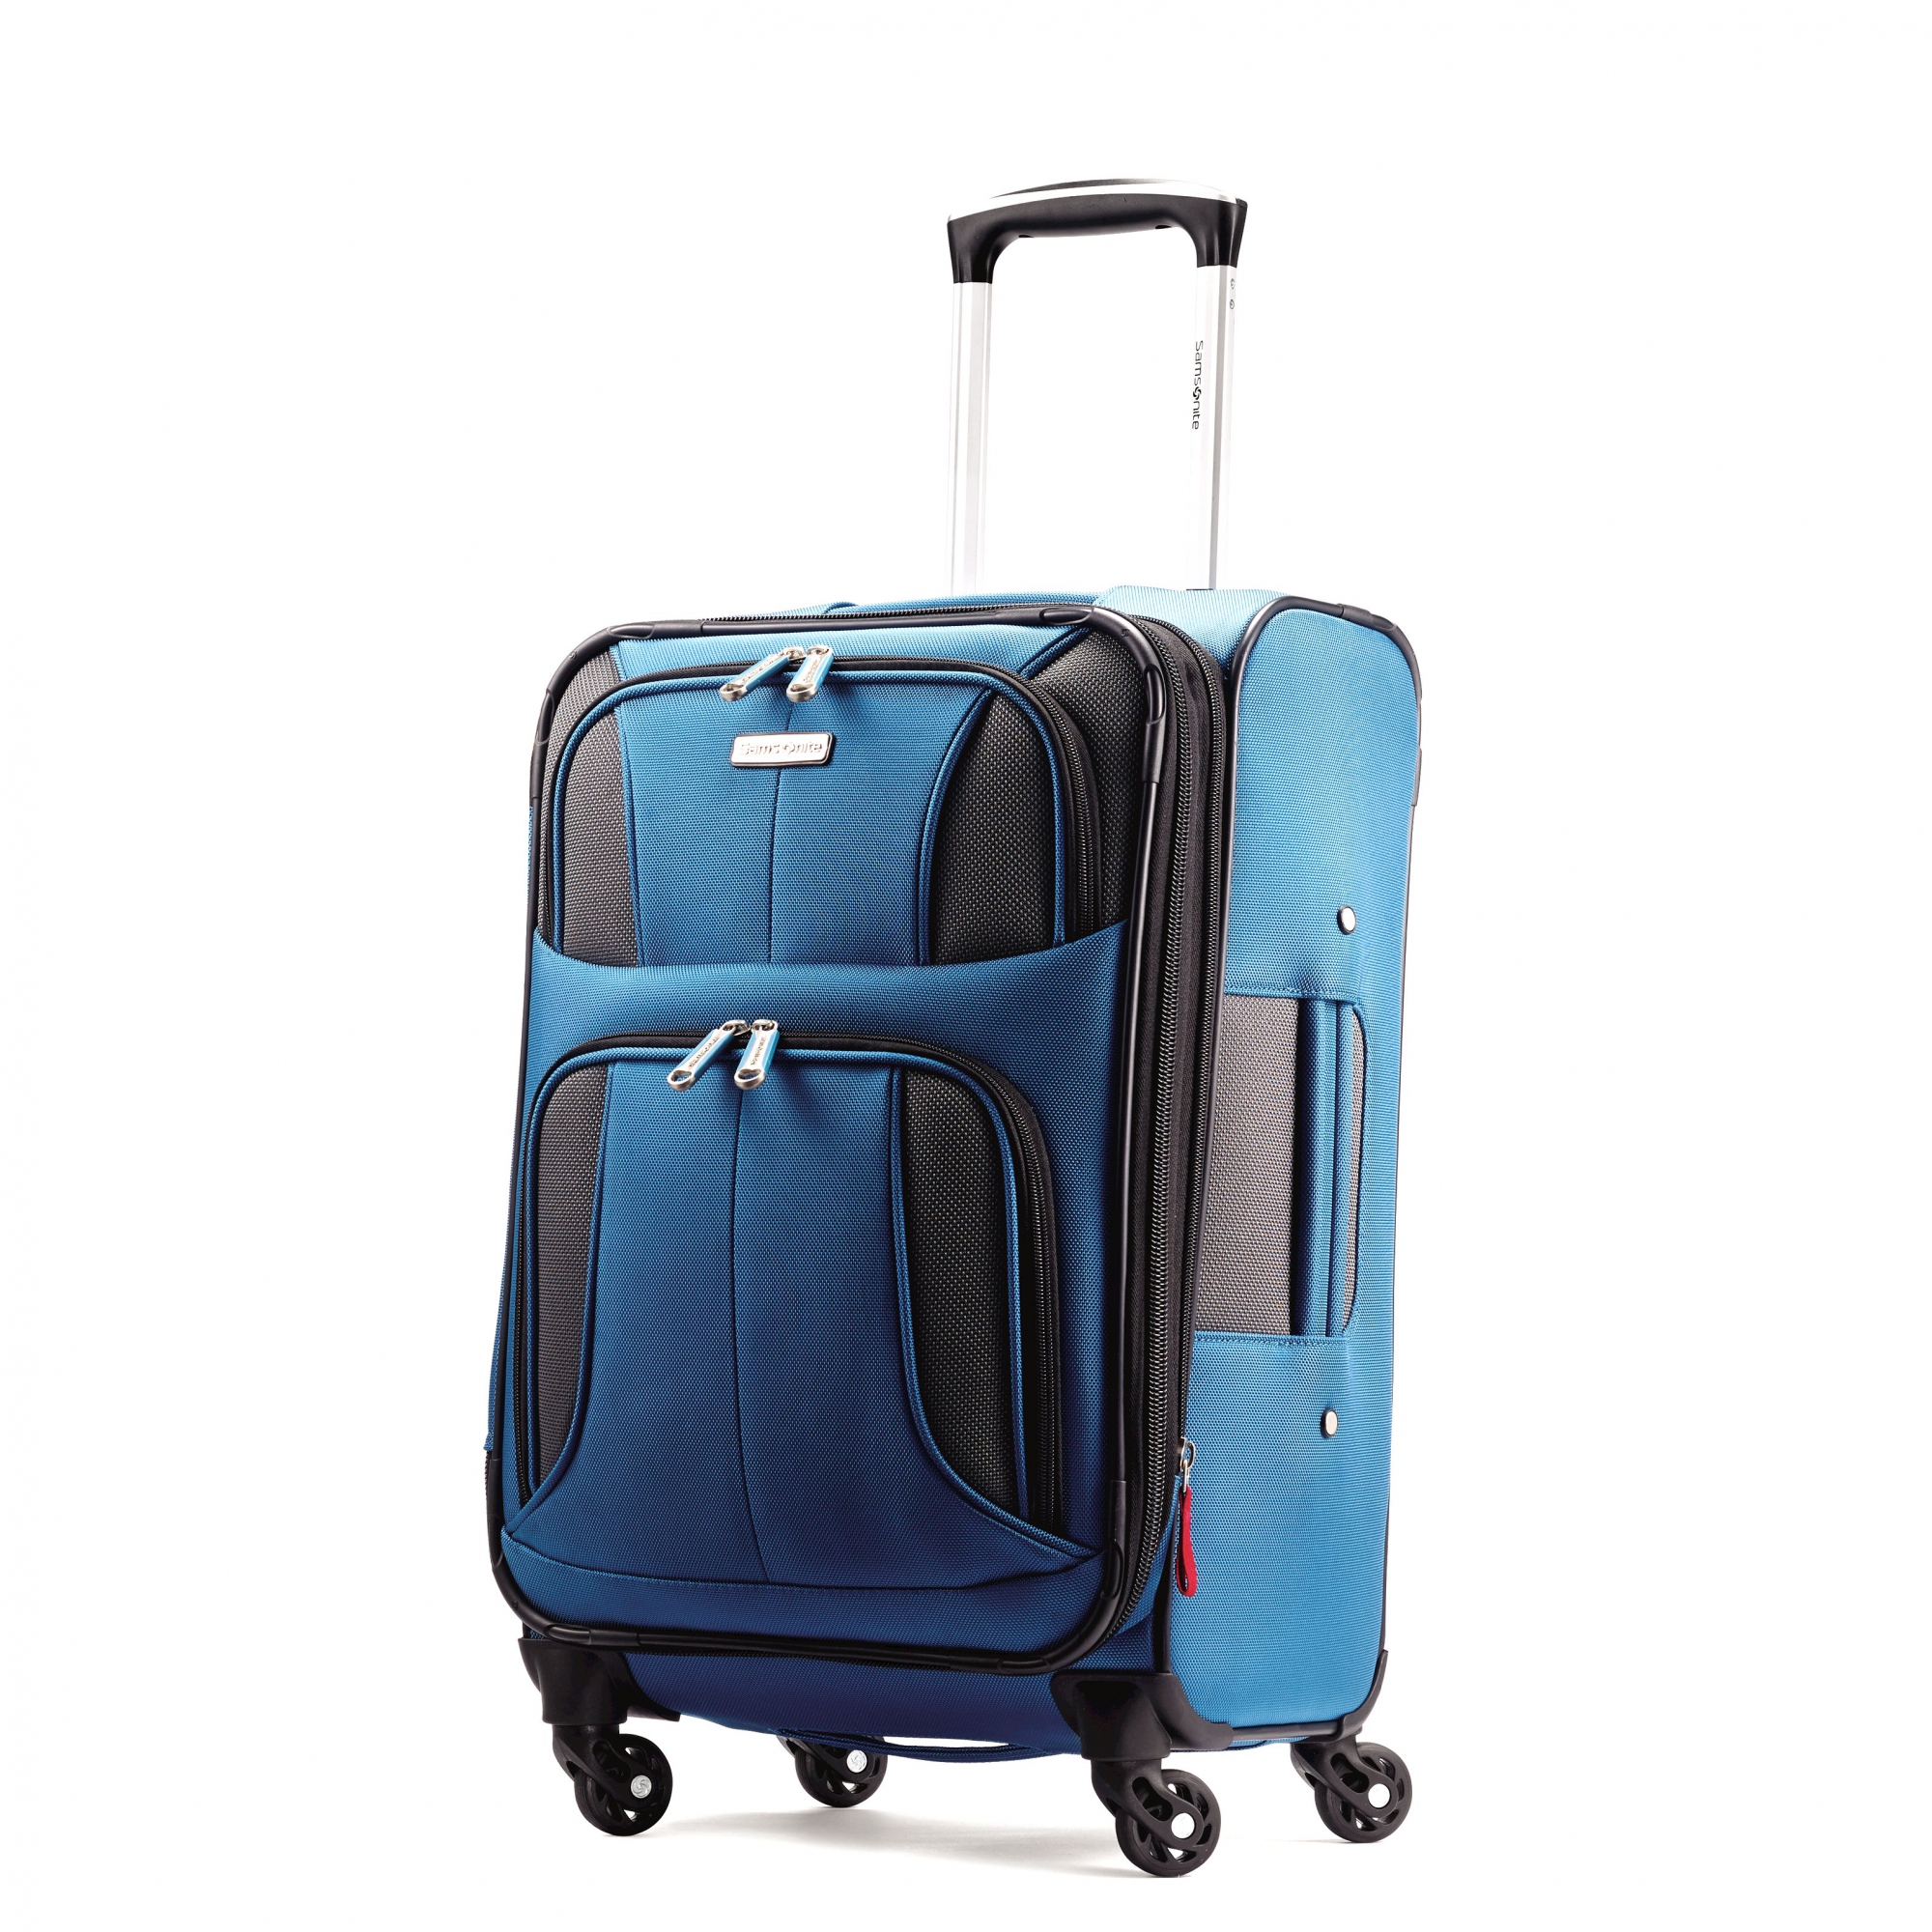 Samsonite Aspire Xlite Expandable 20 Carry On Luggage | eBay